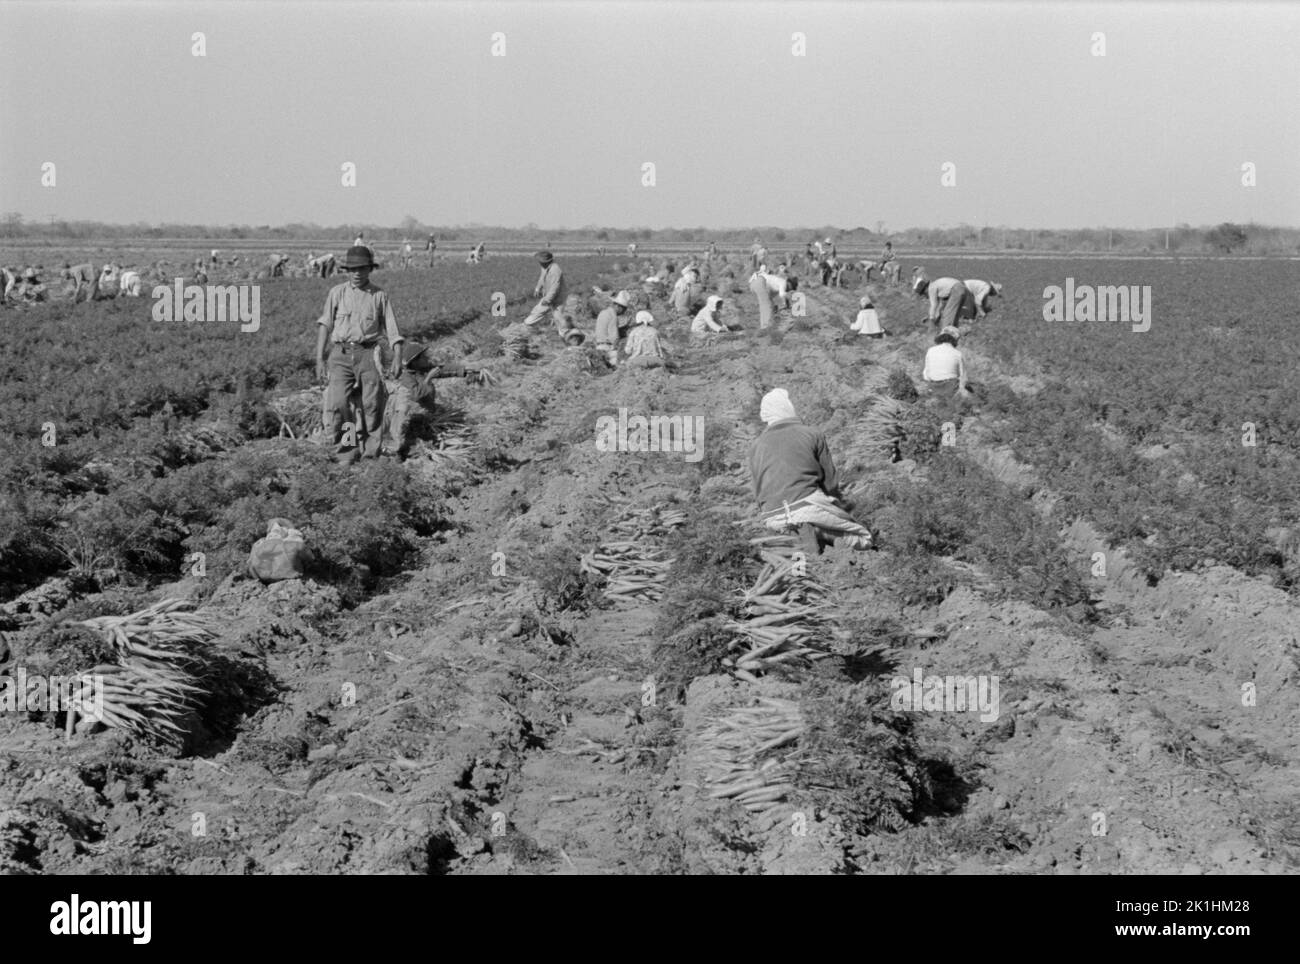 Mexikanische Landarbeiter auf einem Feld, auf dem Karotten geerntet werden. Edinburg, Texas, USA, 1939 Stockfoto